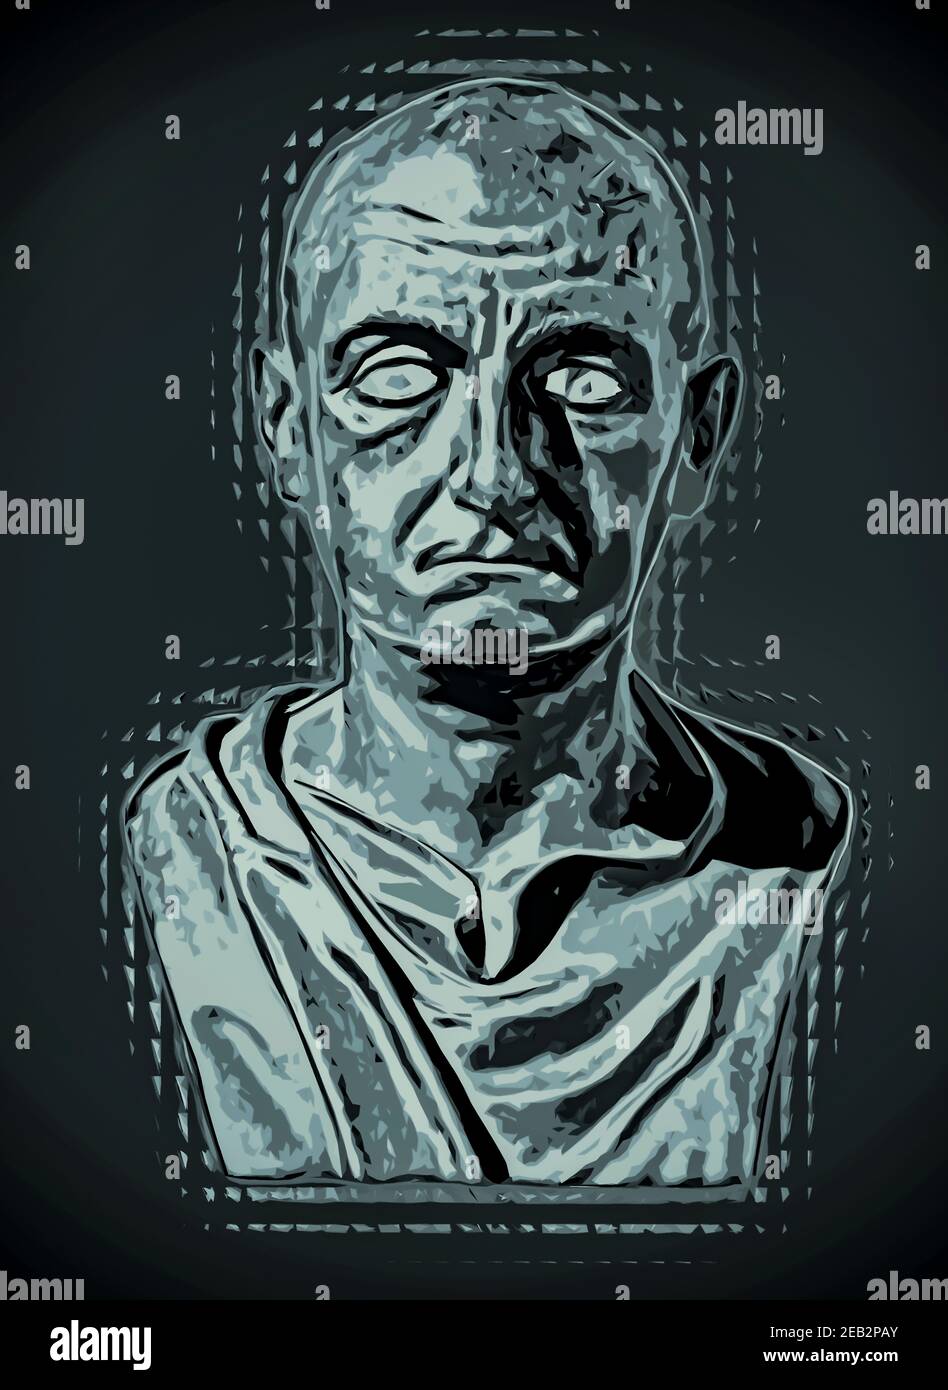 Büste des römischen Generals Scipio Africanus berühmte Kampfkriege in 200 v. Chr. mit Hannibals A. Dies ist eine Mixed-Media-manipulierte Fotografie. Stockfoto